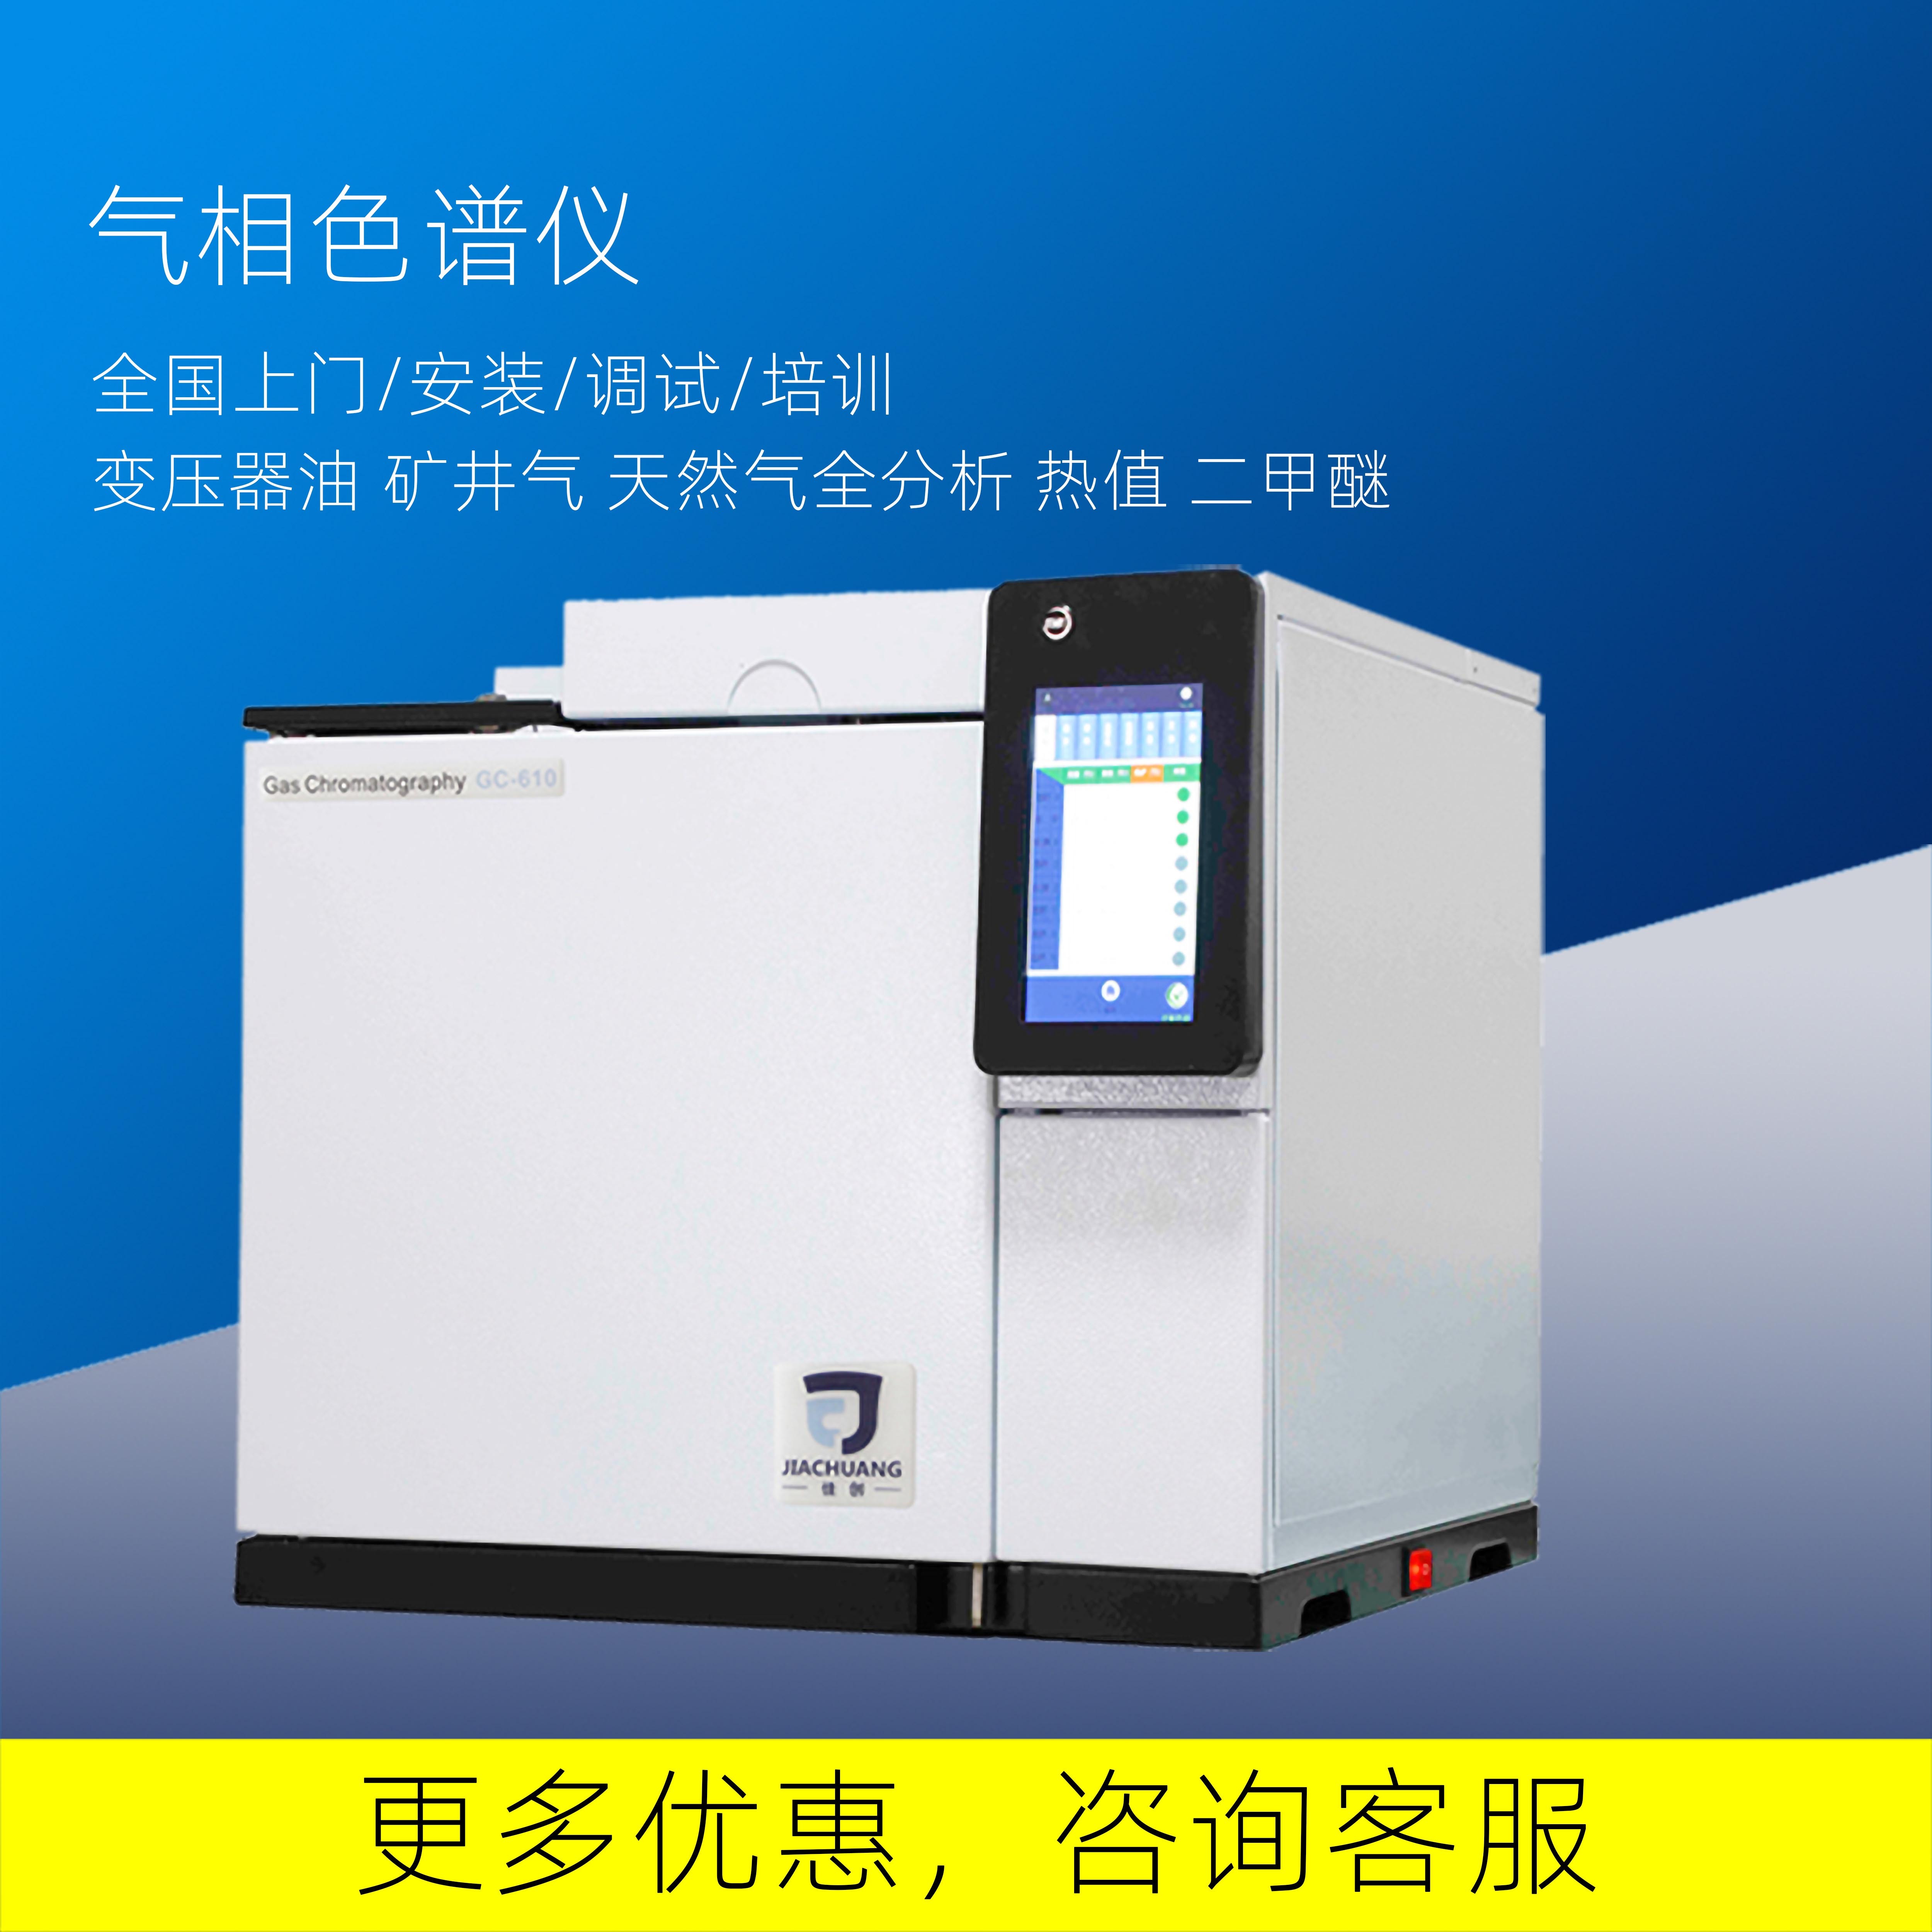 南京佳创供应气相色谱仪GC-610检测植物油中6号溶剂